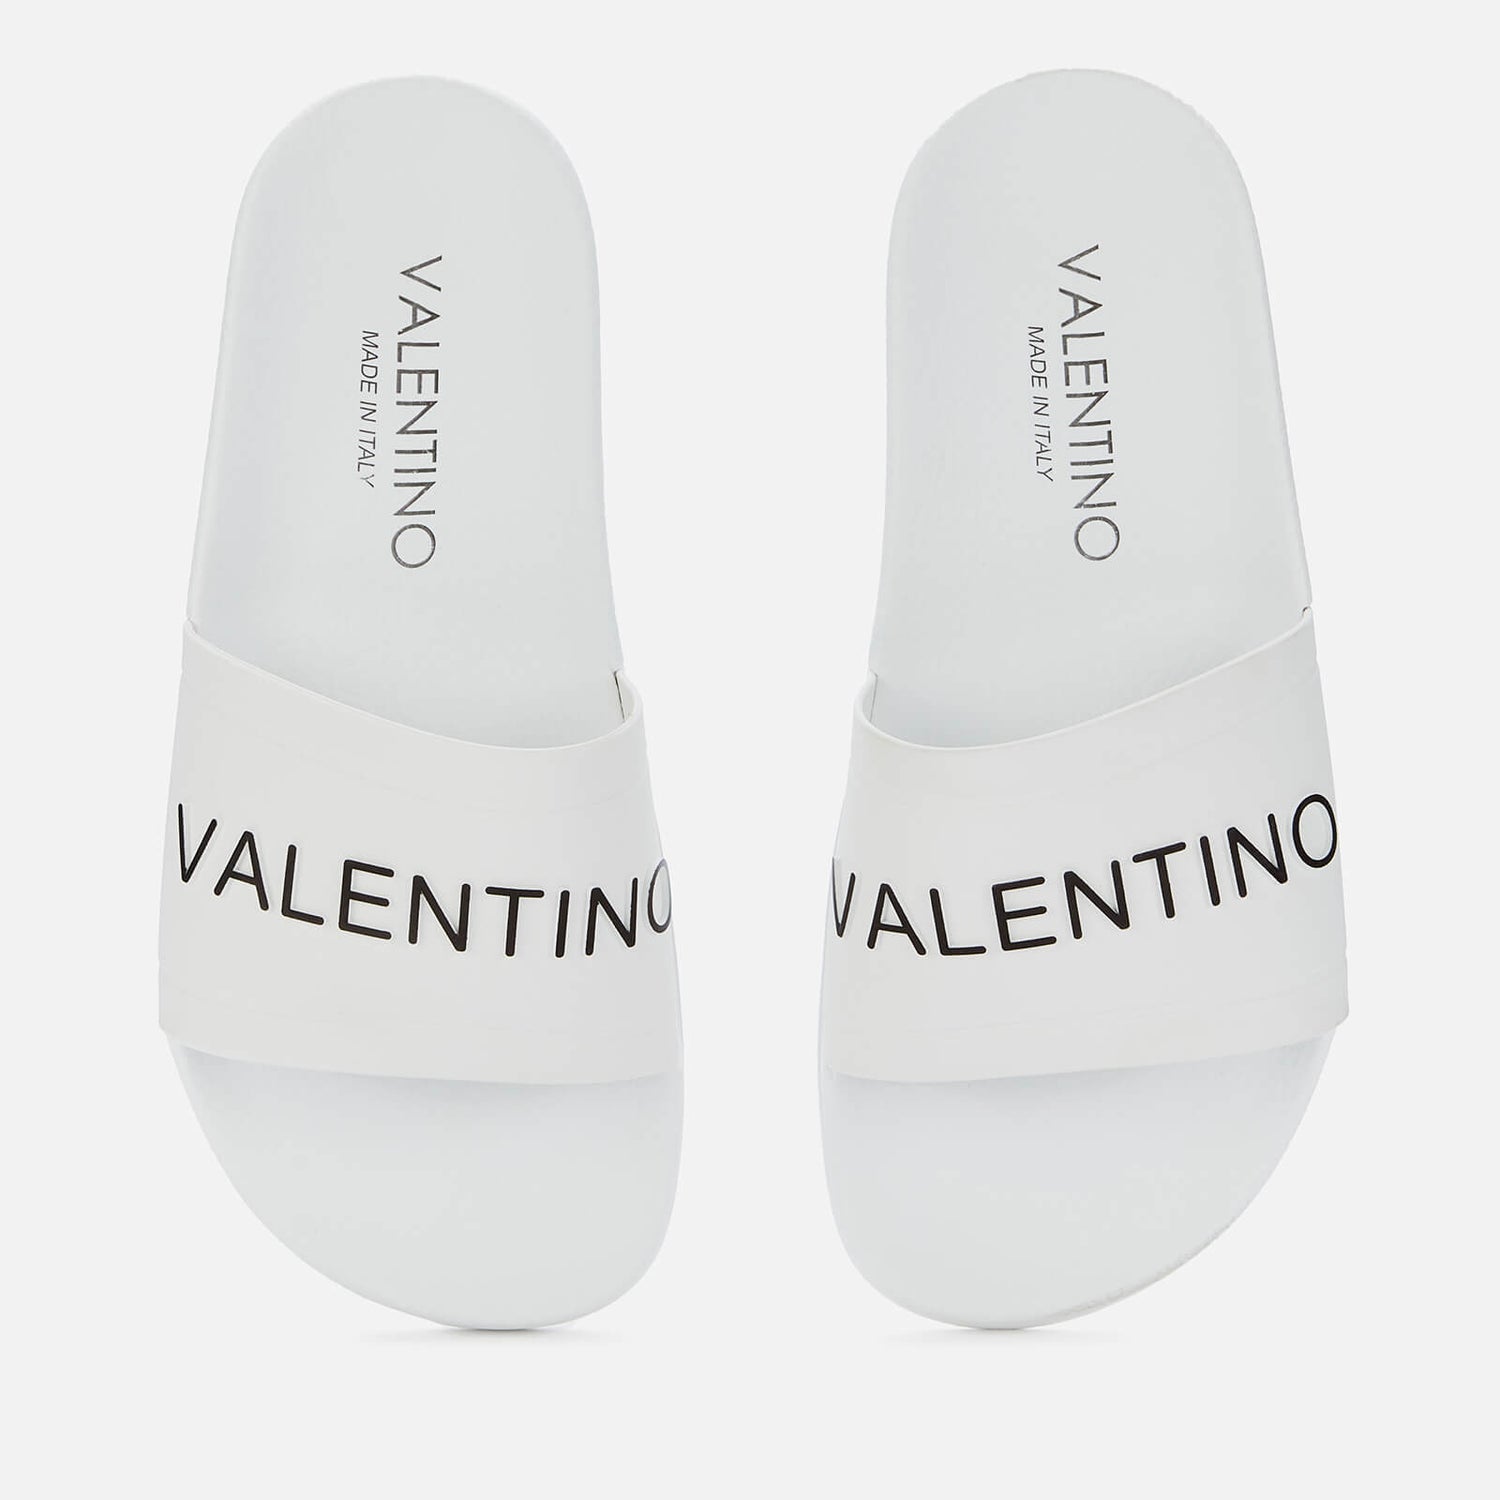 Valentino Shoes Women's Slide Sandals - White - UK 8